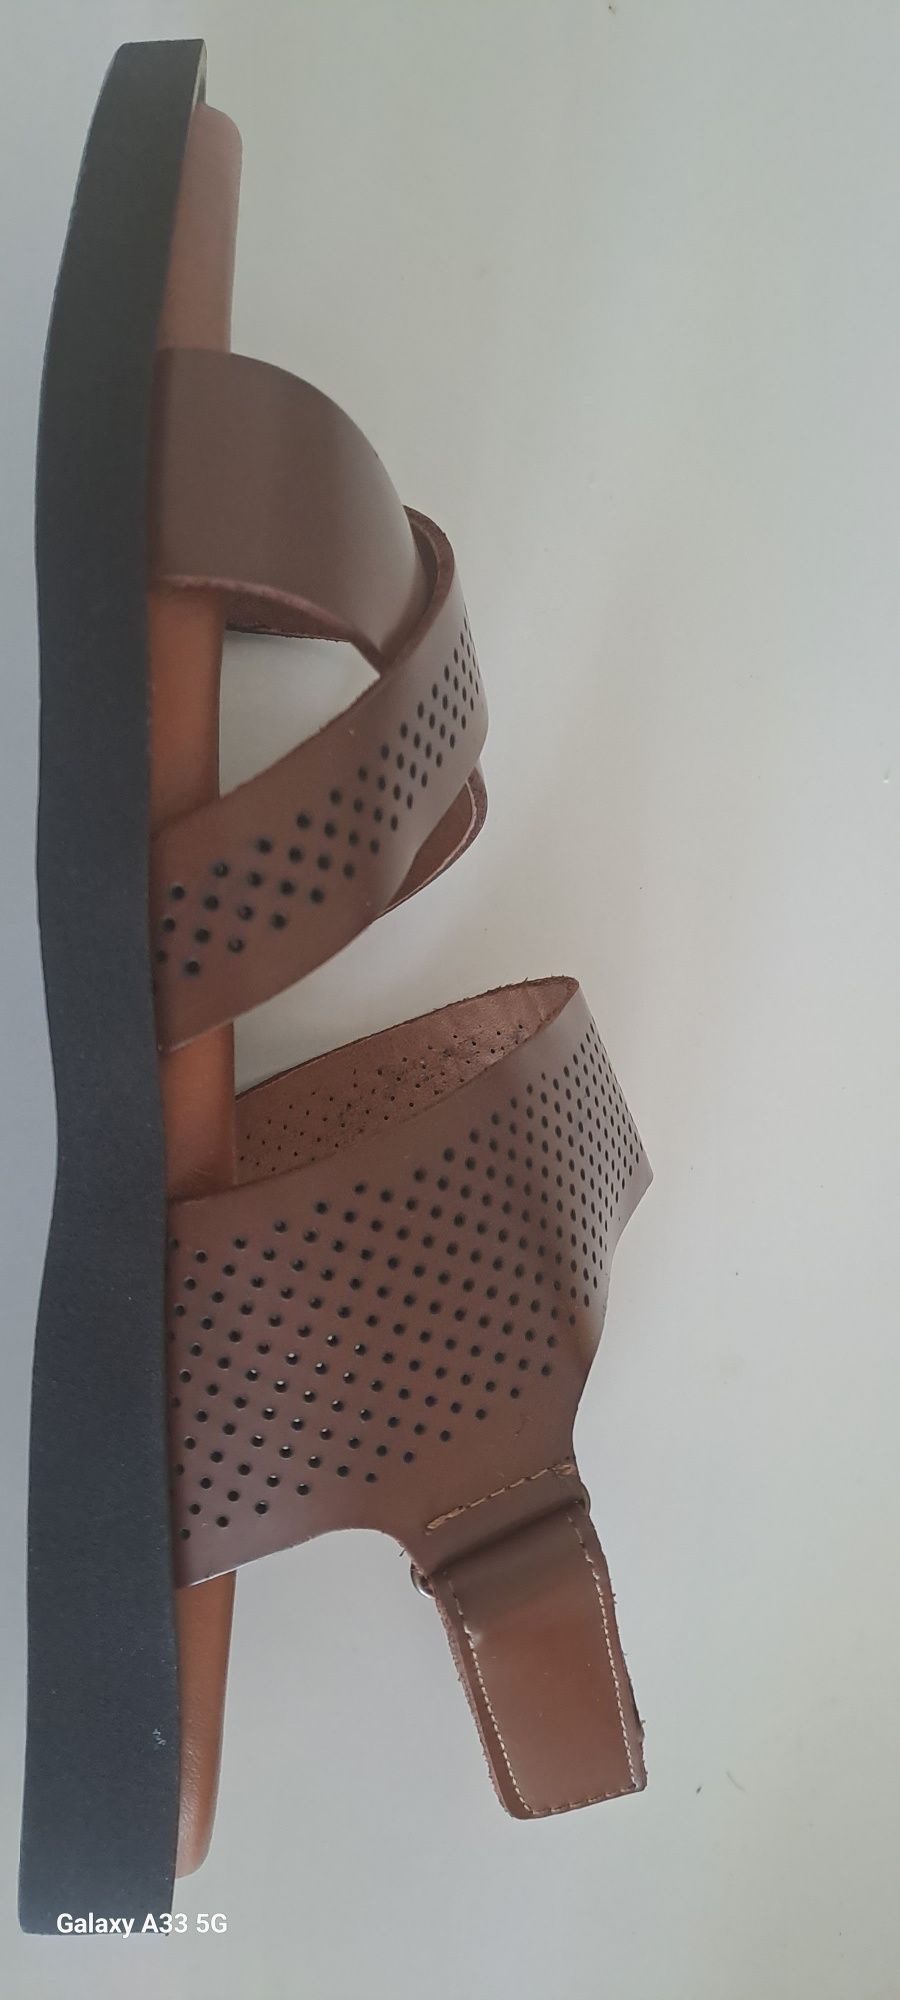 Мужские сандали кожа коричневые 43 размера новые